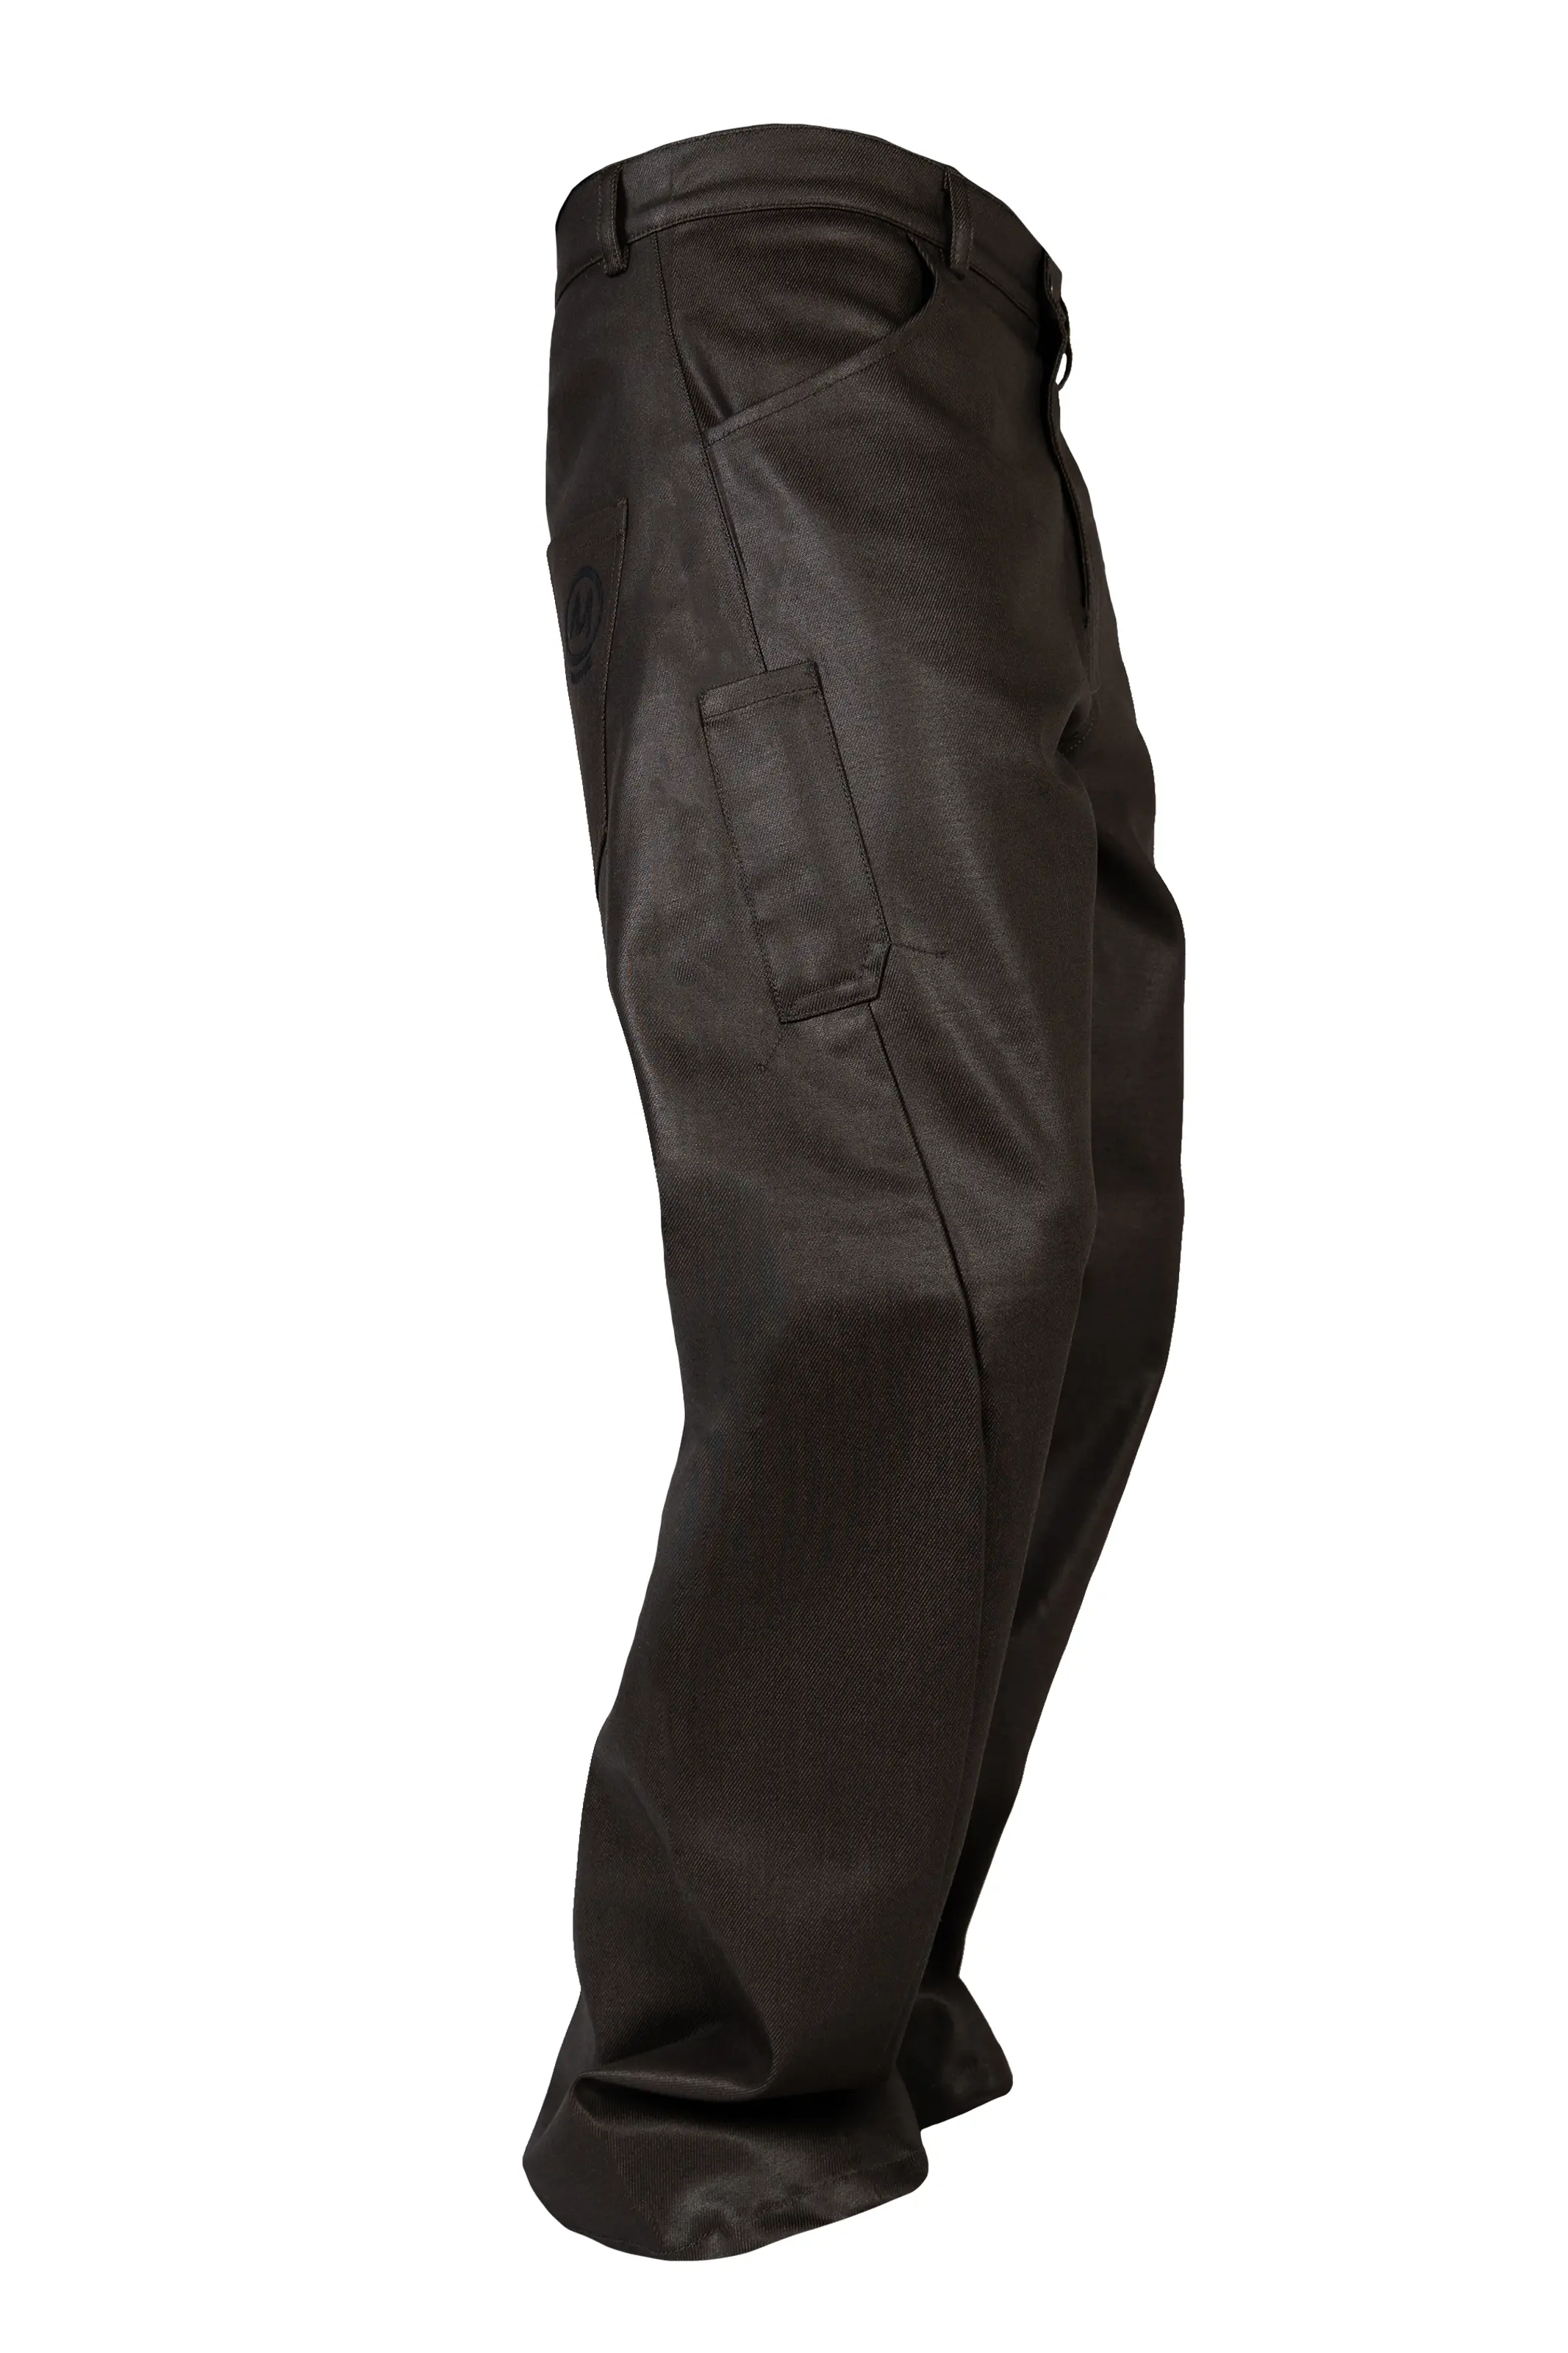 Jeans spalmato marrone scuro in morbido denim idrorepellente - GEO PLUS Monvic